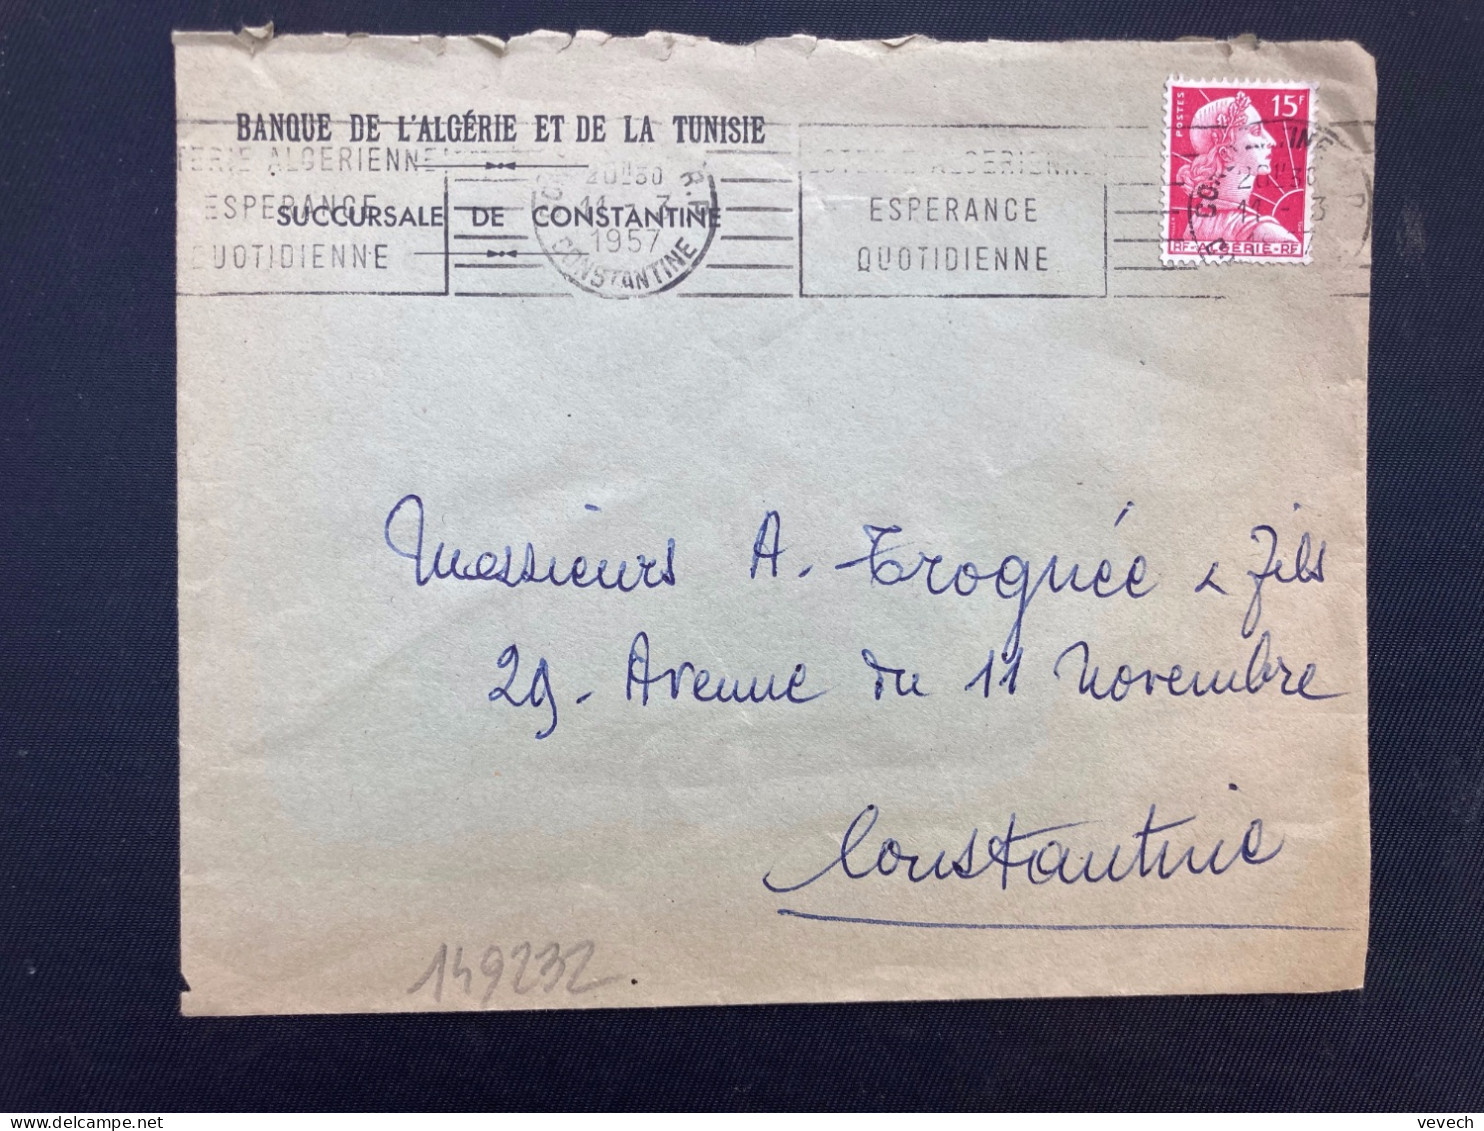 LETTRE BANQUE DE L'ALGERIE ET DE LA TUNISIE TP M DE MULLER 15F OBL.MEC.11-3 1957 CONSTANTINE RP - 1955-1961 Marianne De Muller